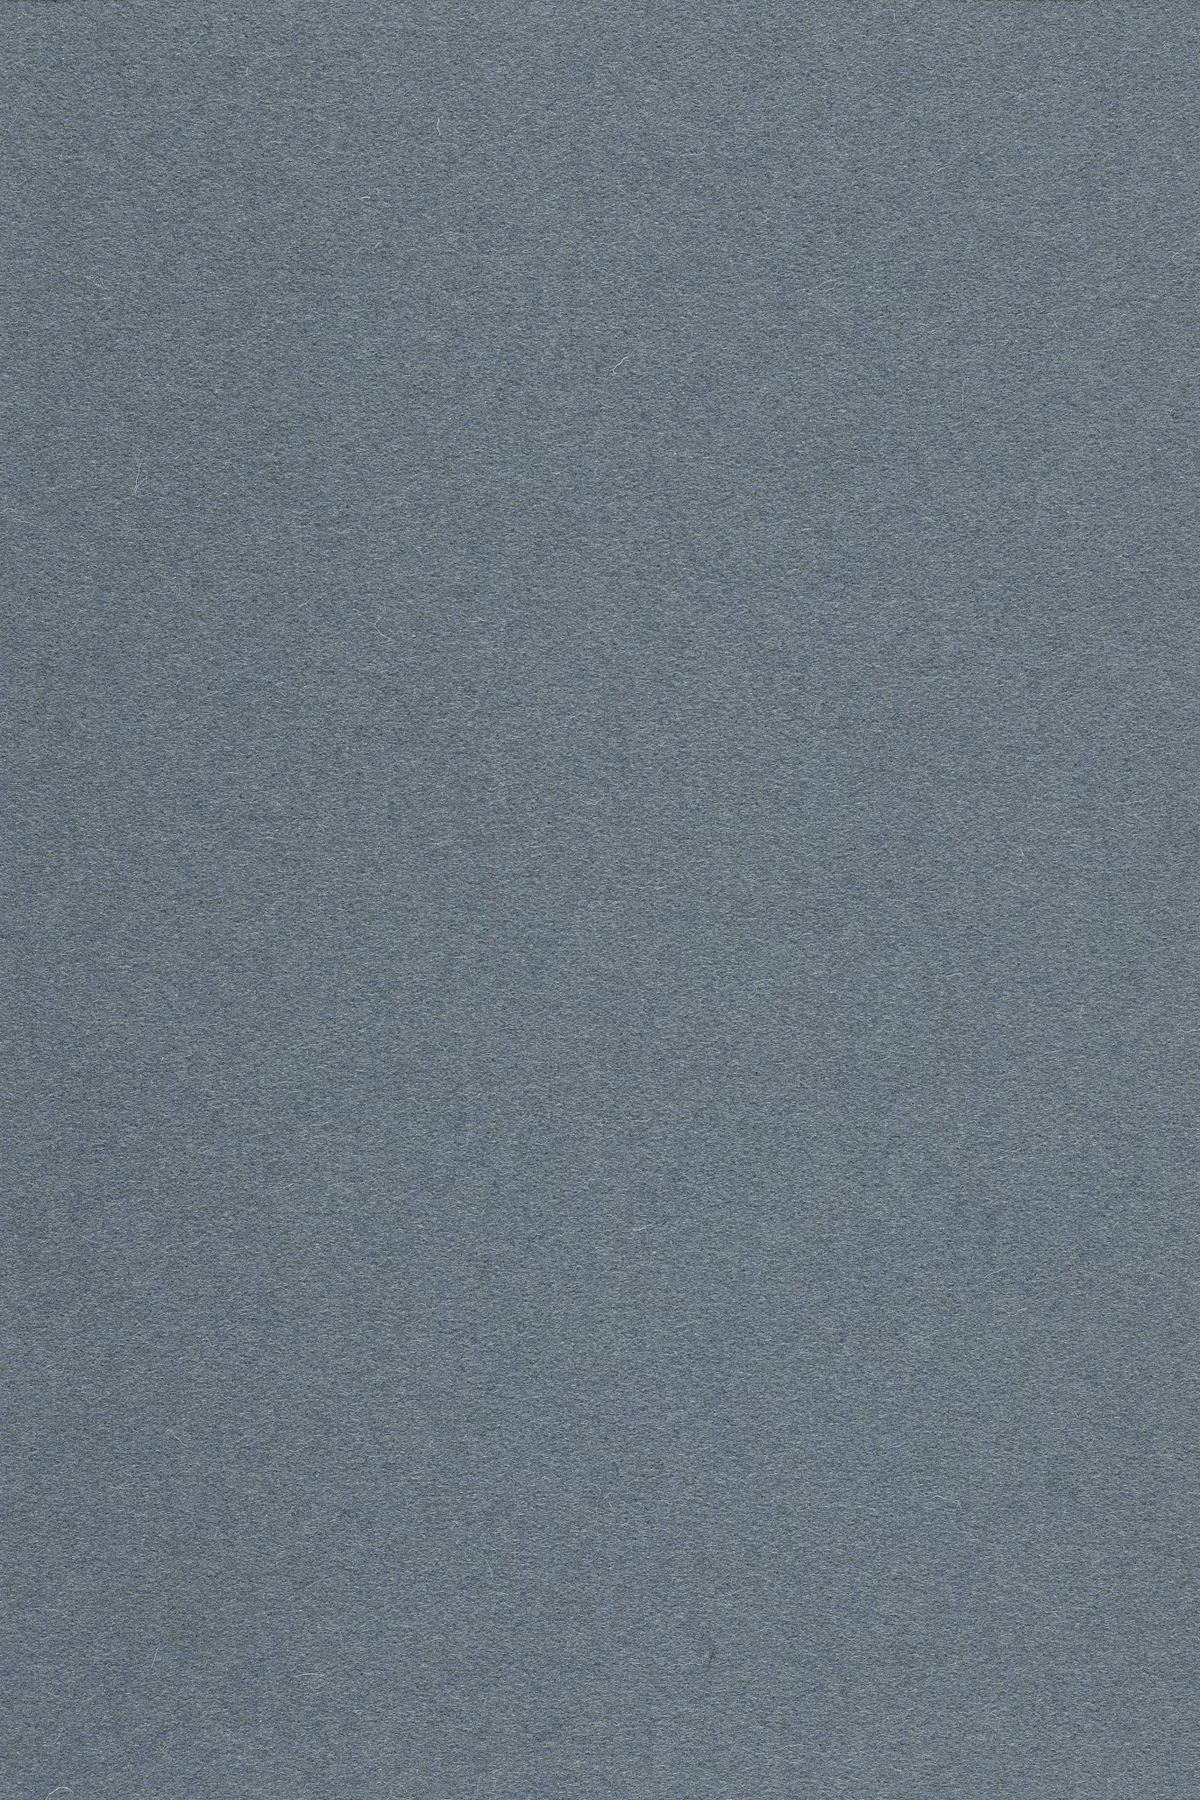 Fabric sample Divina 3 154 grey